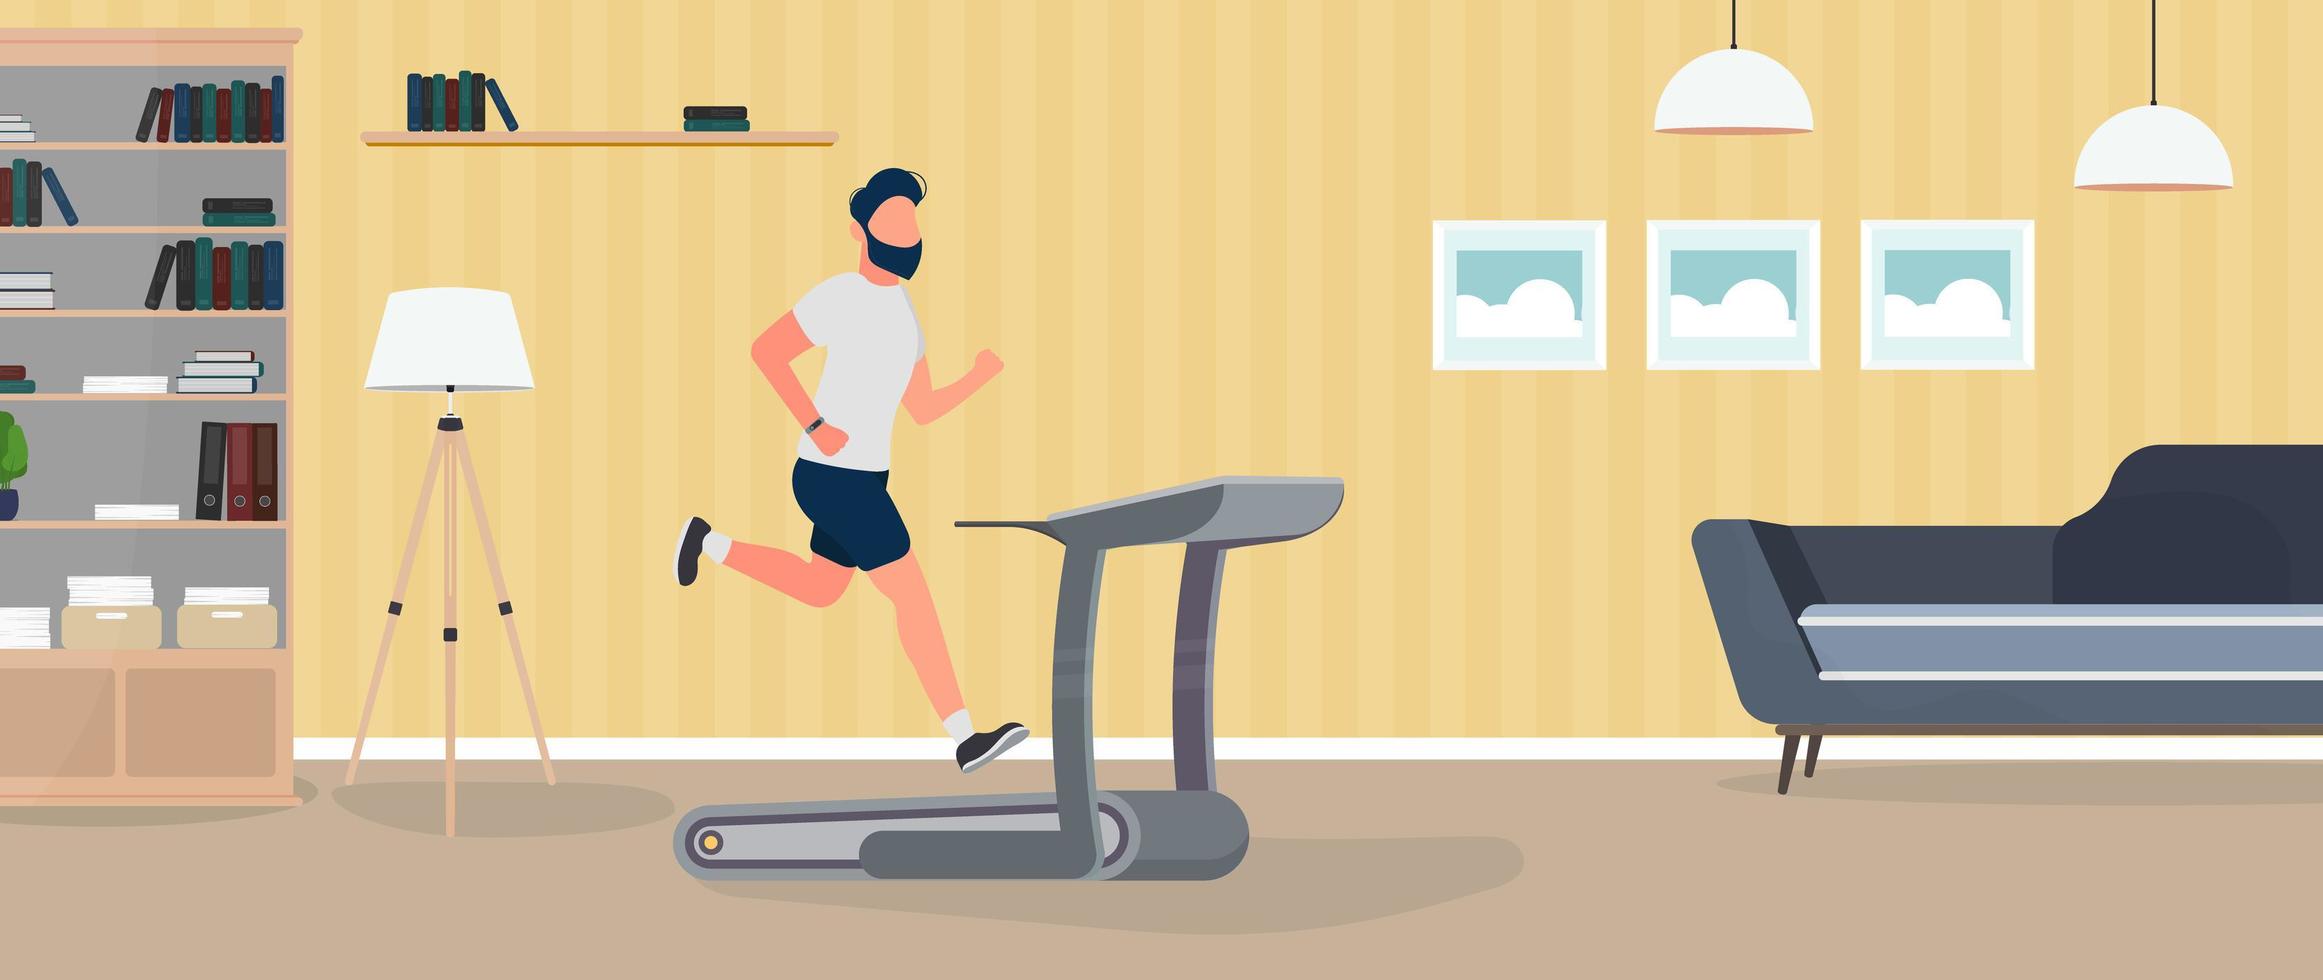 Der Typ läuft auf einem Laufband. Ein Mann joggt auf einem Simulator. das konzept von sport und gesundem lebensstil. Vektor. vektor